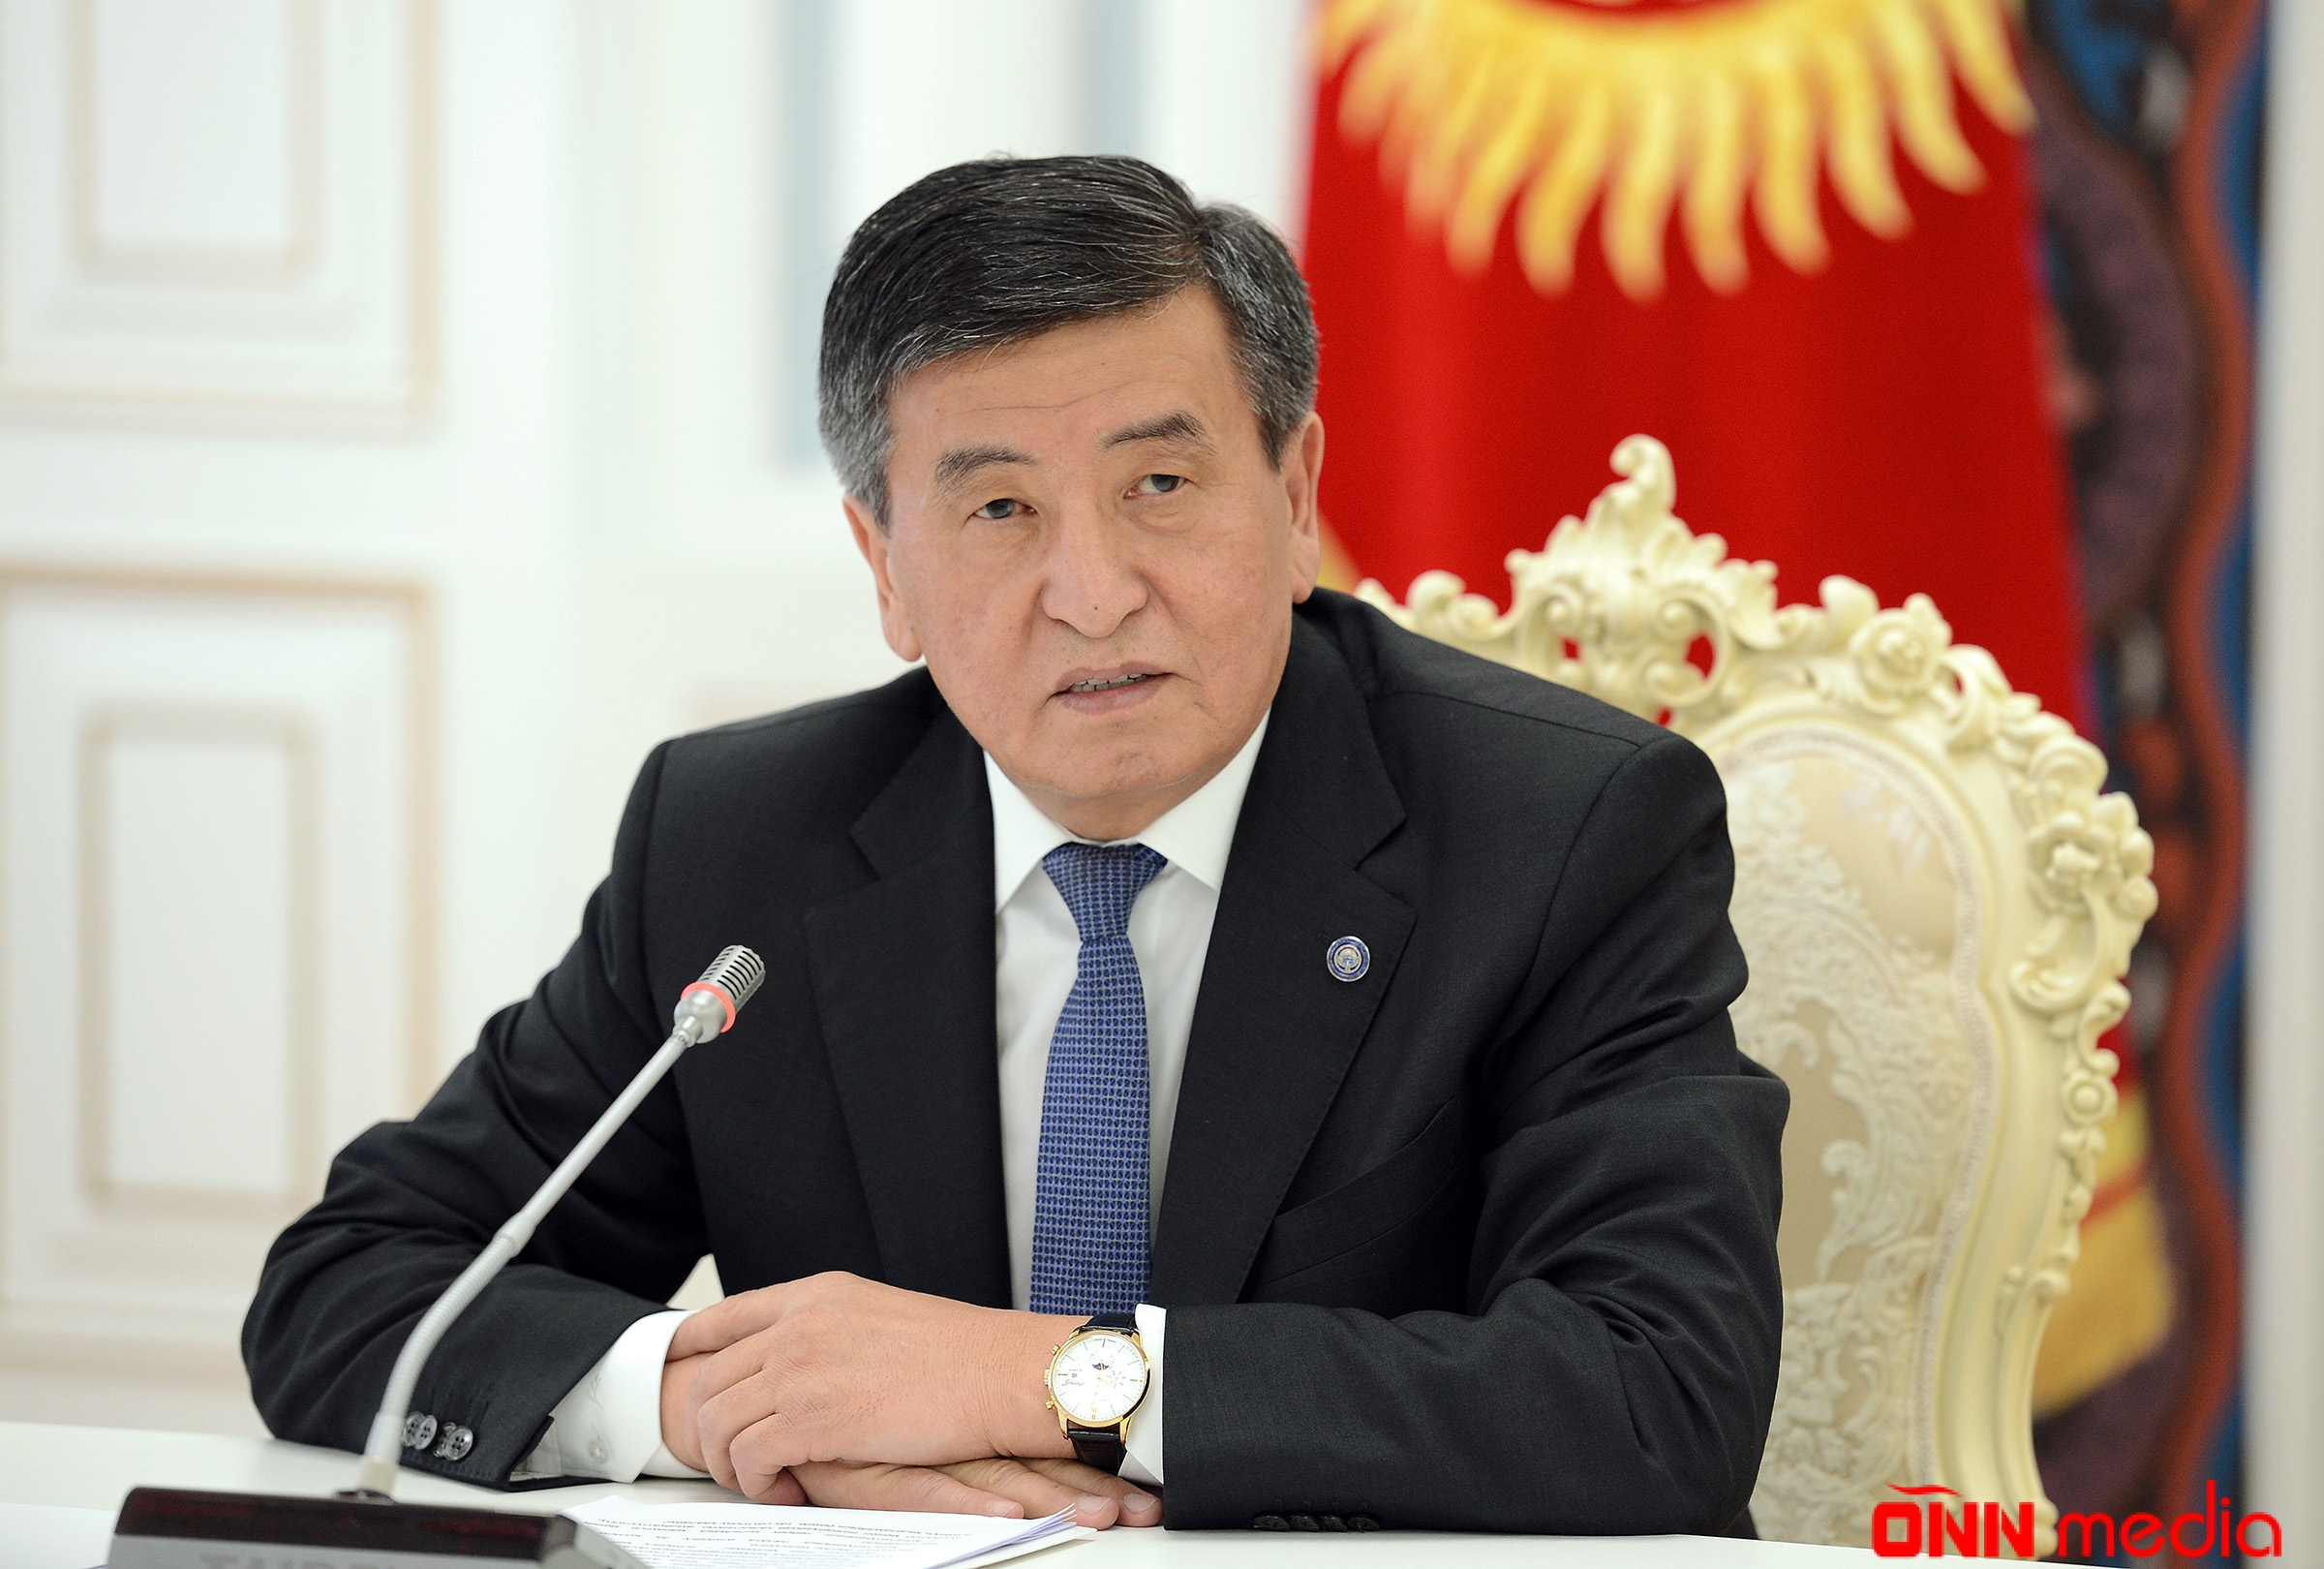 Qırğızıstan prezidenti istefa verəcək – BU ŞƏRTLƏ…